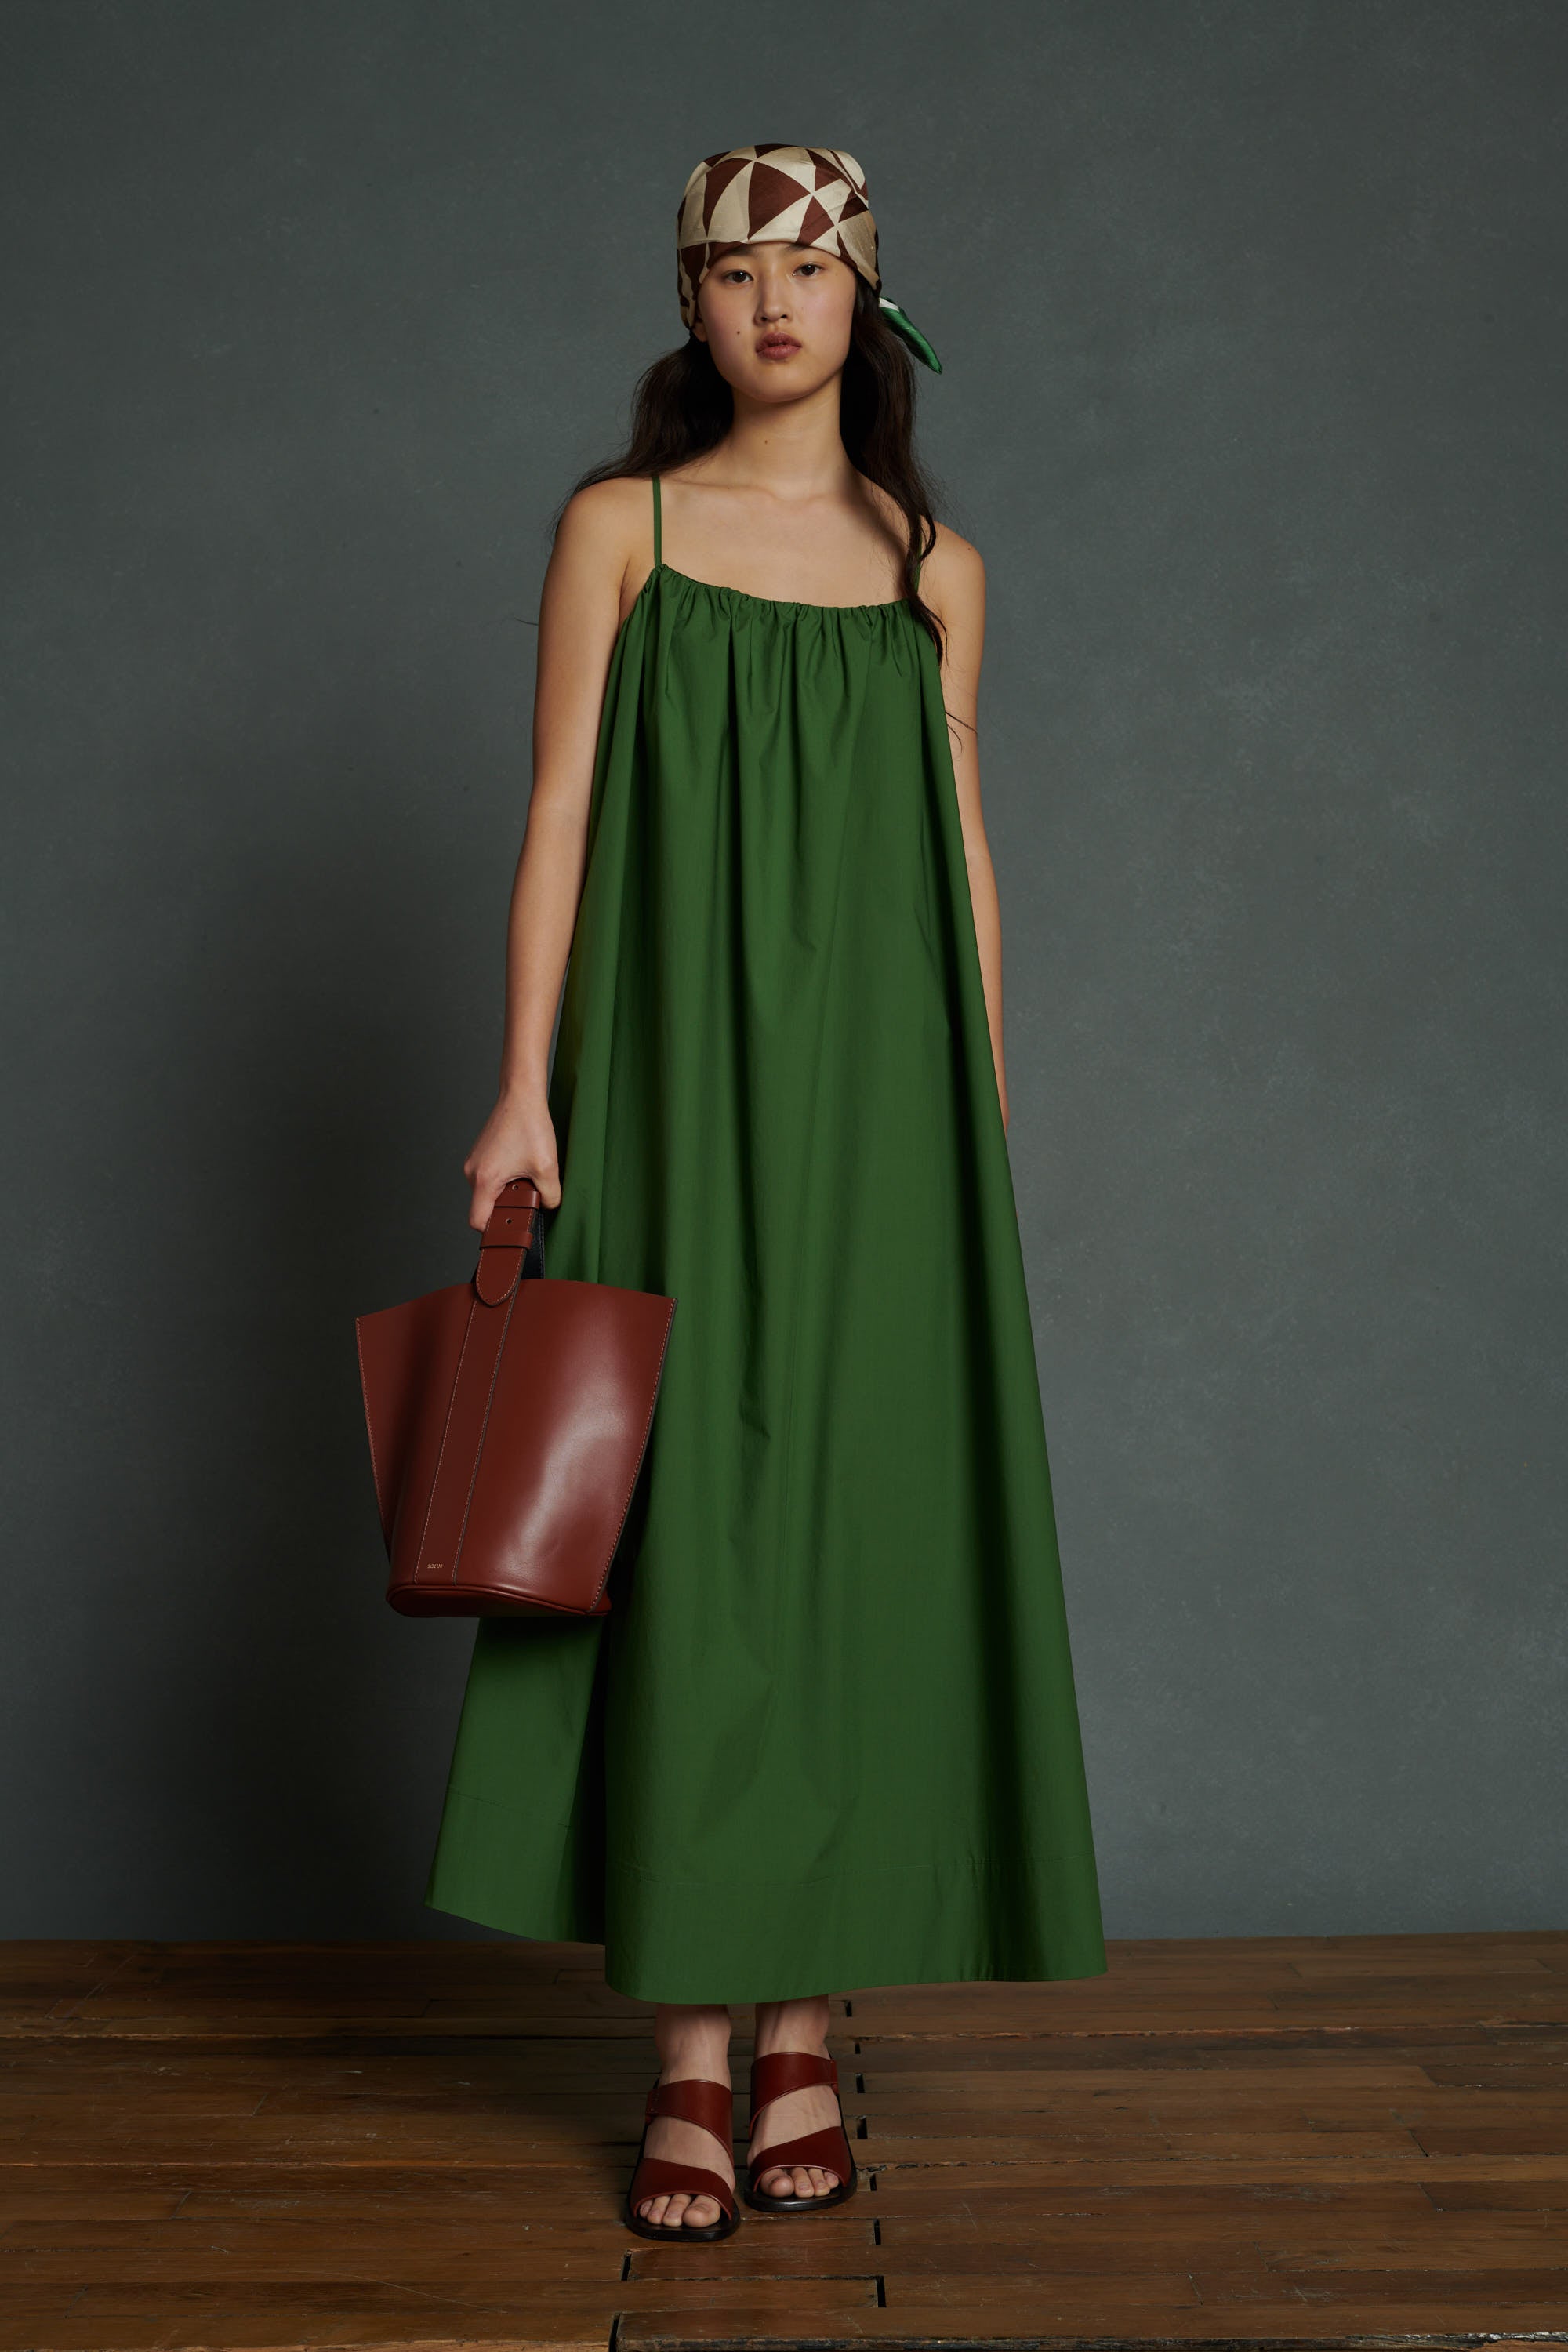 Soeur Arielle Green Dress